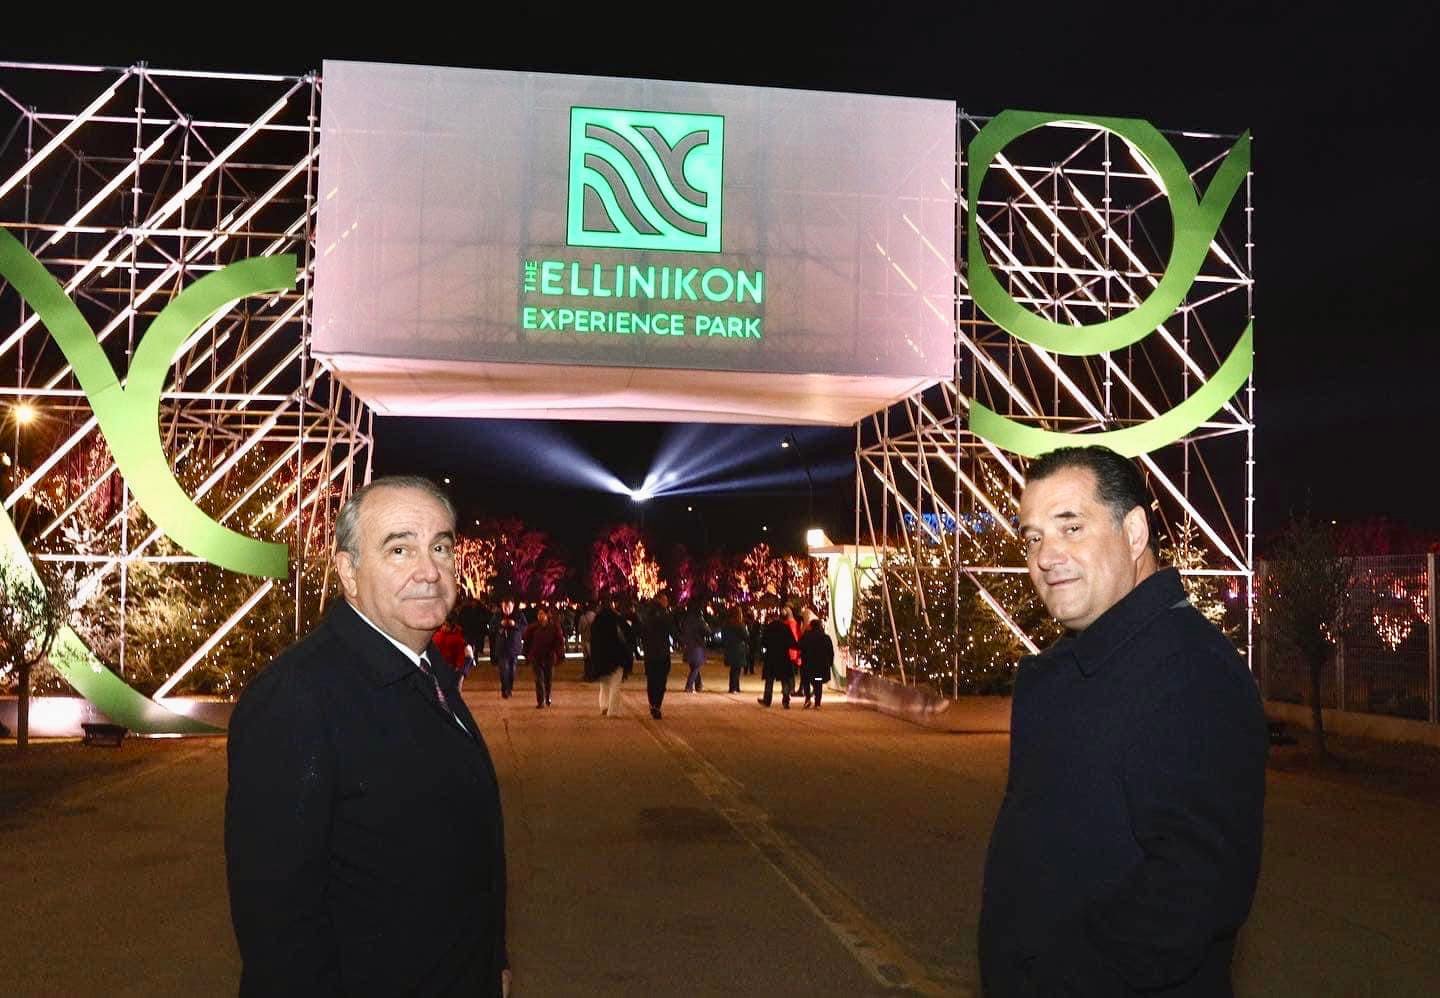 Ο Υπουργός Ανάπτυξης και Επενδύσεων Άδωνις Γεωργιάδης και ο Αναπληρωτής Υπουργός Νίκος Παπαθανάσης στα εγκαίνια του Experience Park, στο Ελληνικό